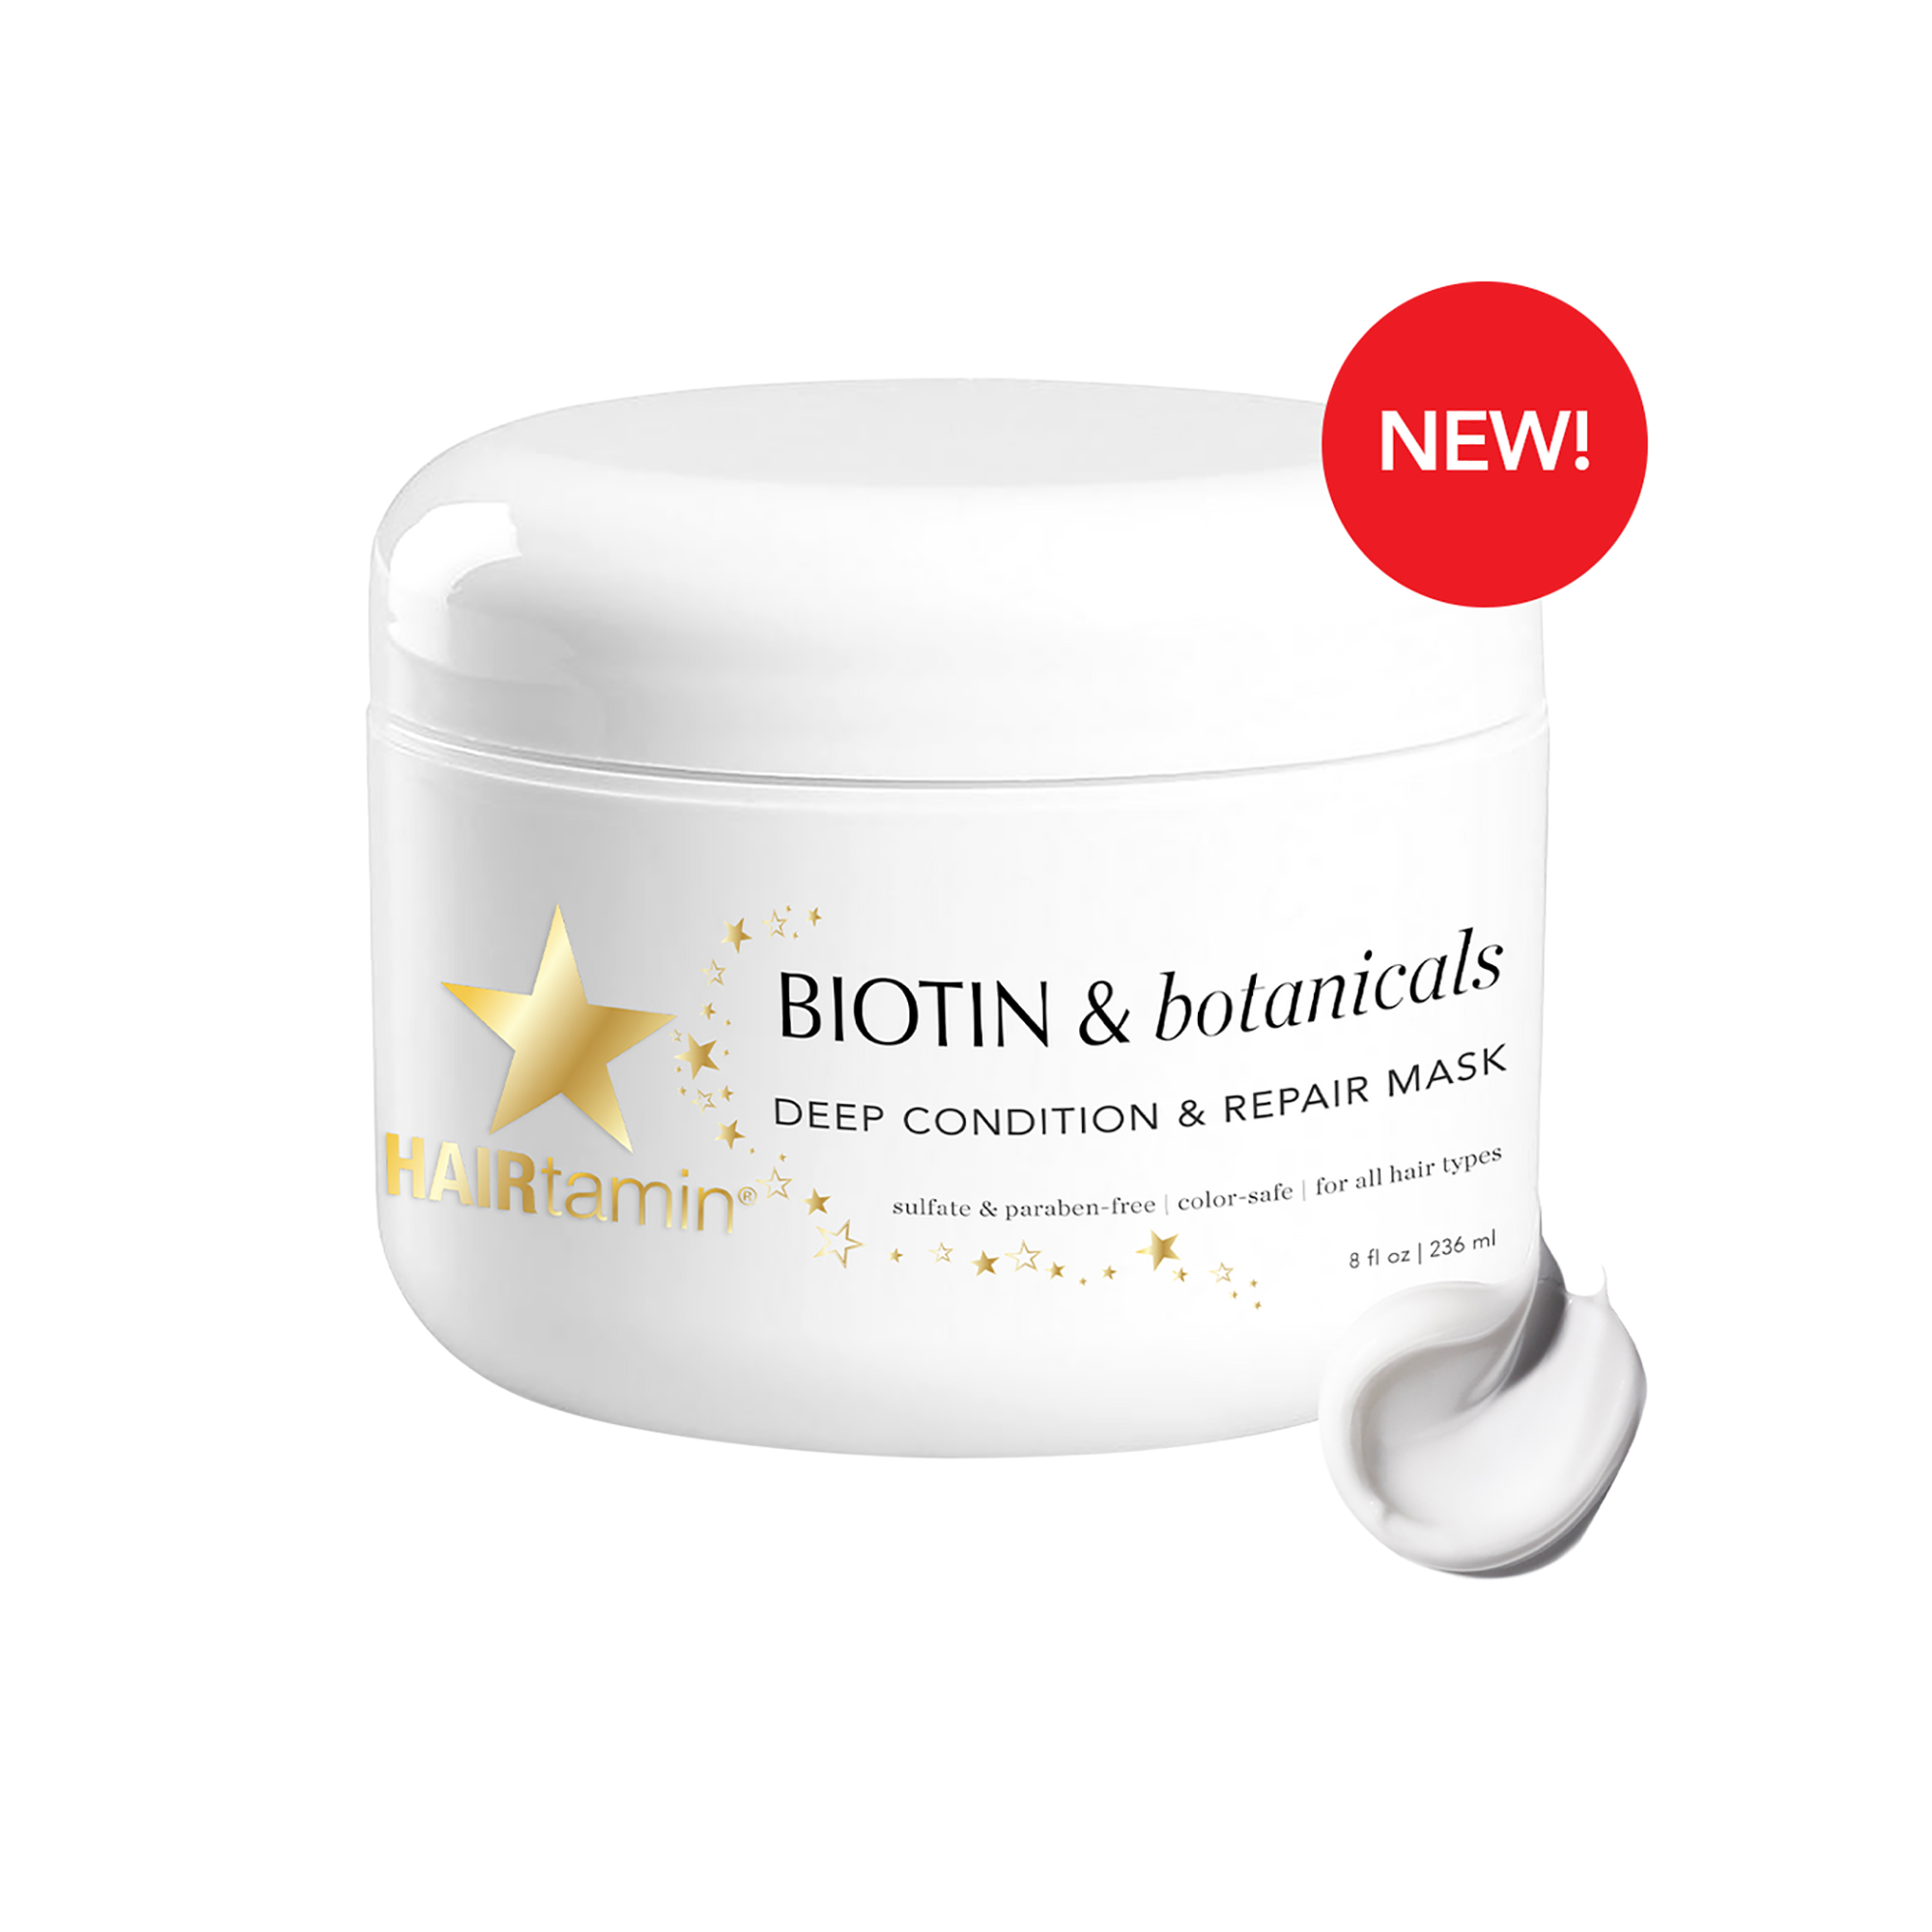 Hairtamin Biotin Deep Condition & Repair Mask - 8oz